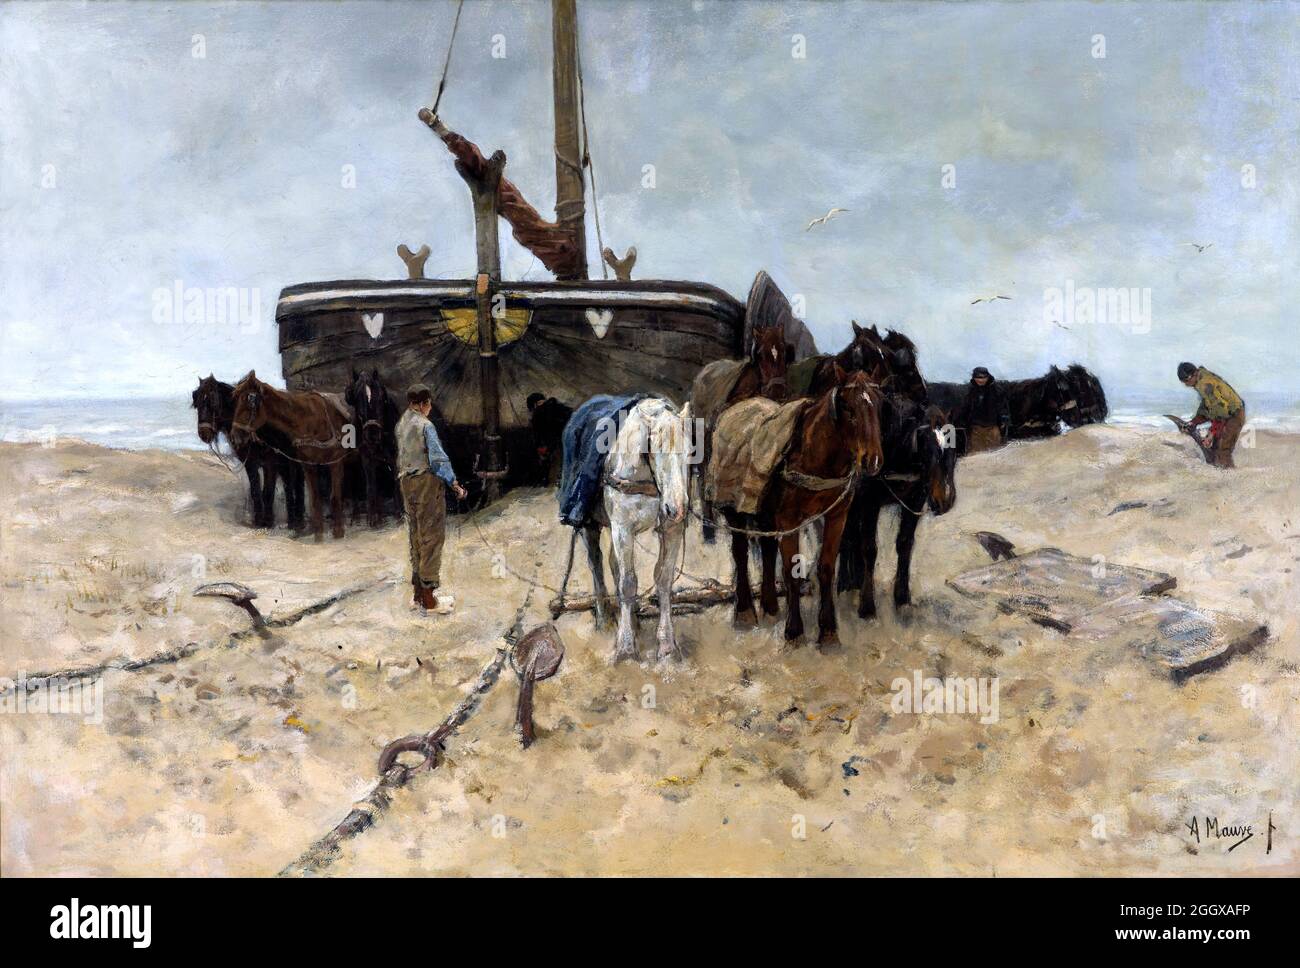 Fischerboot am Strand von Anton Mauve (1838-1888), Öl auf Leinwand, 1882 Stockfoto